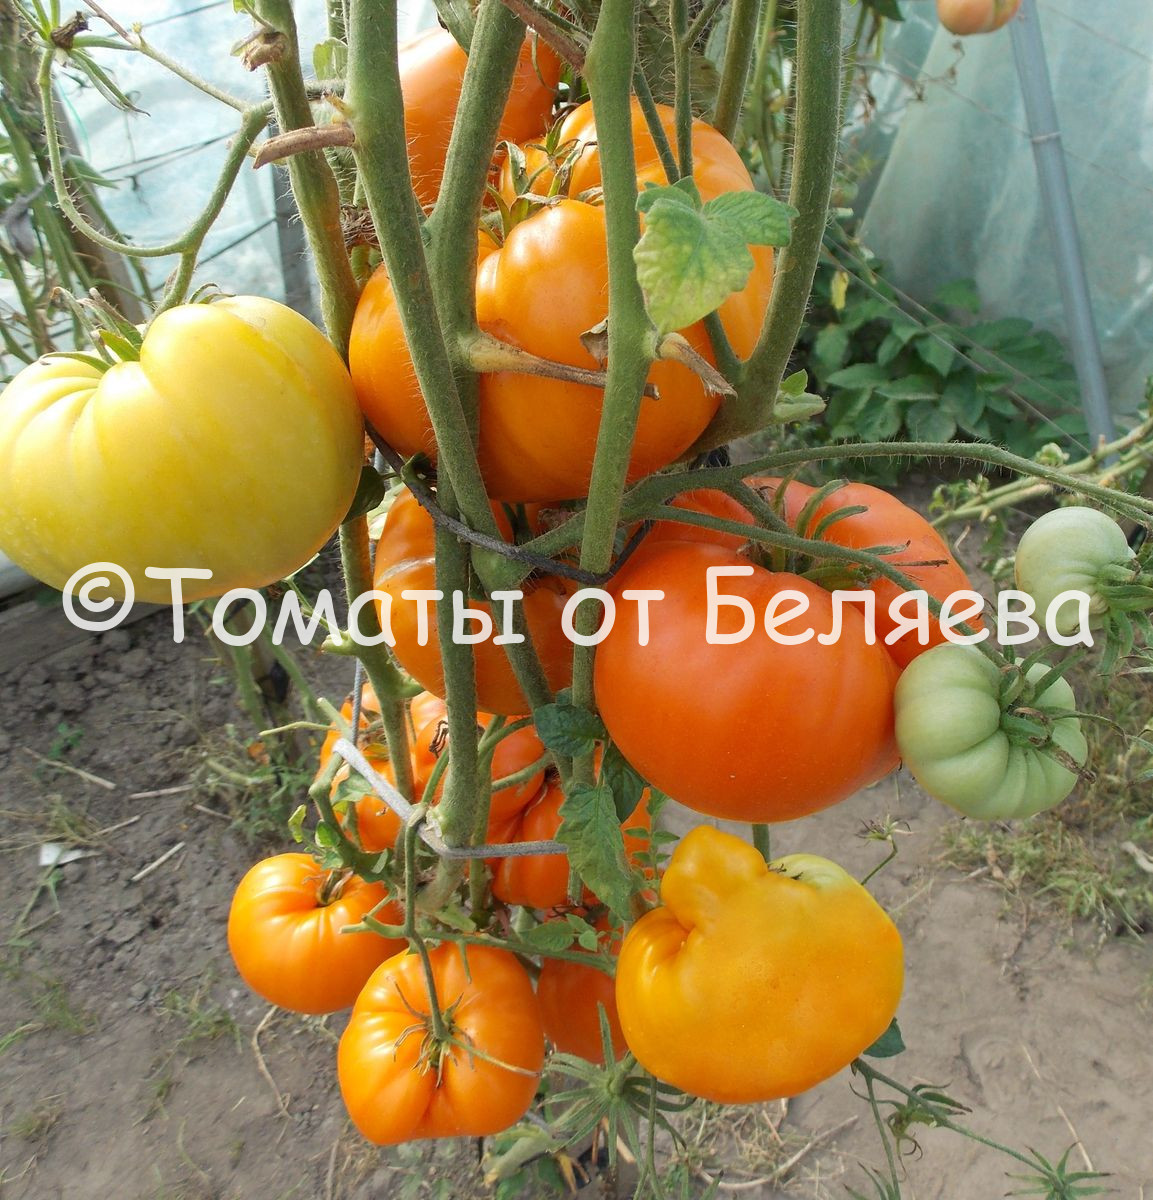 Минусинские томаты, Купить томаты минусинские, Семена от производителя, отзывы, характеристика с описанием сортов, фото.